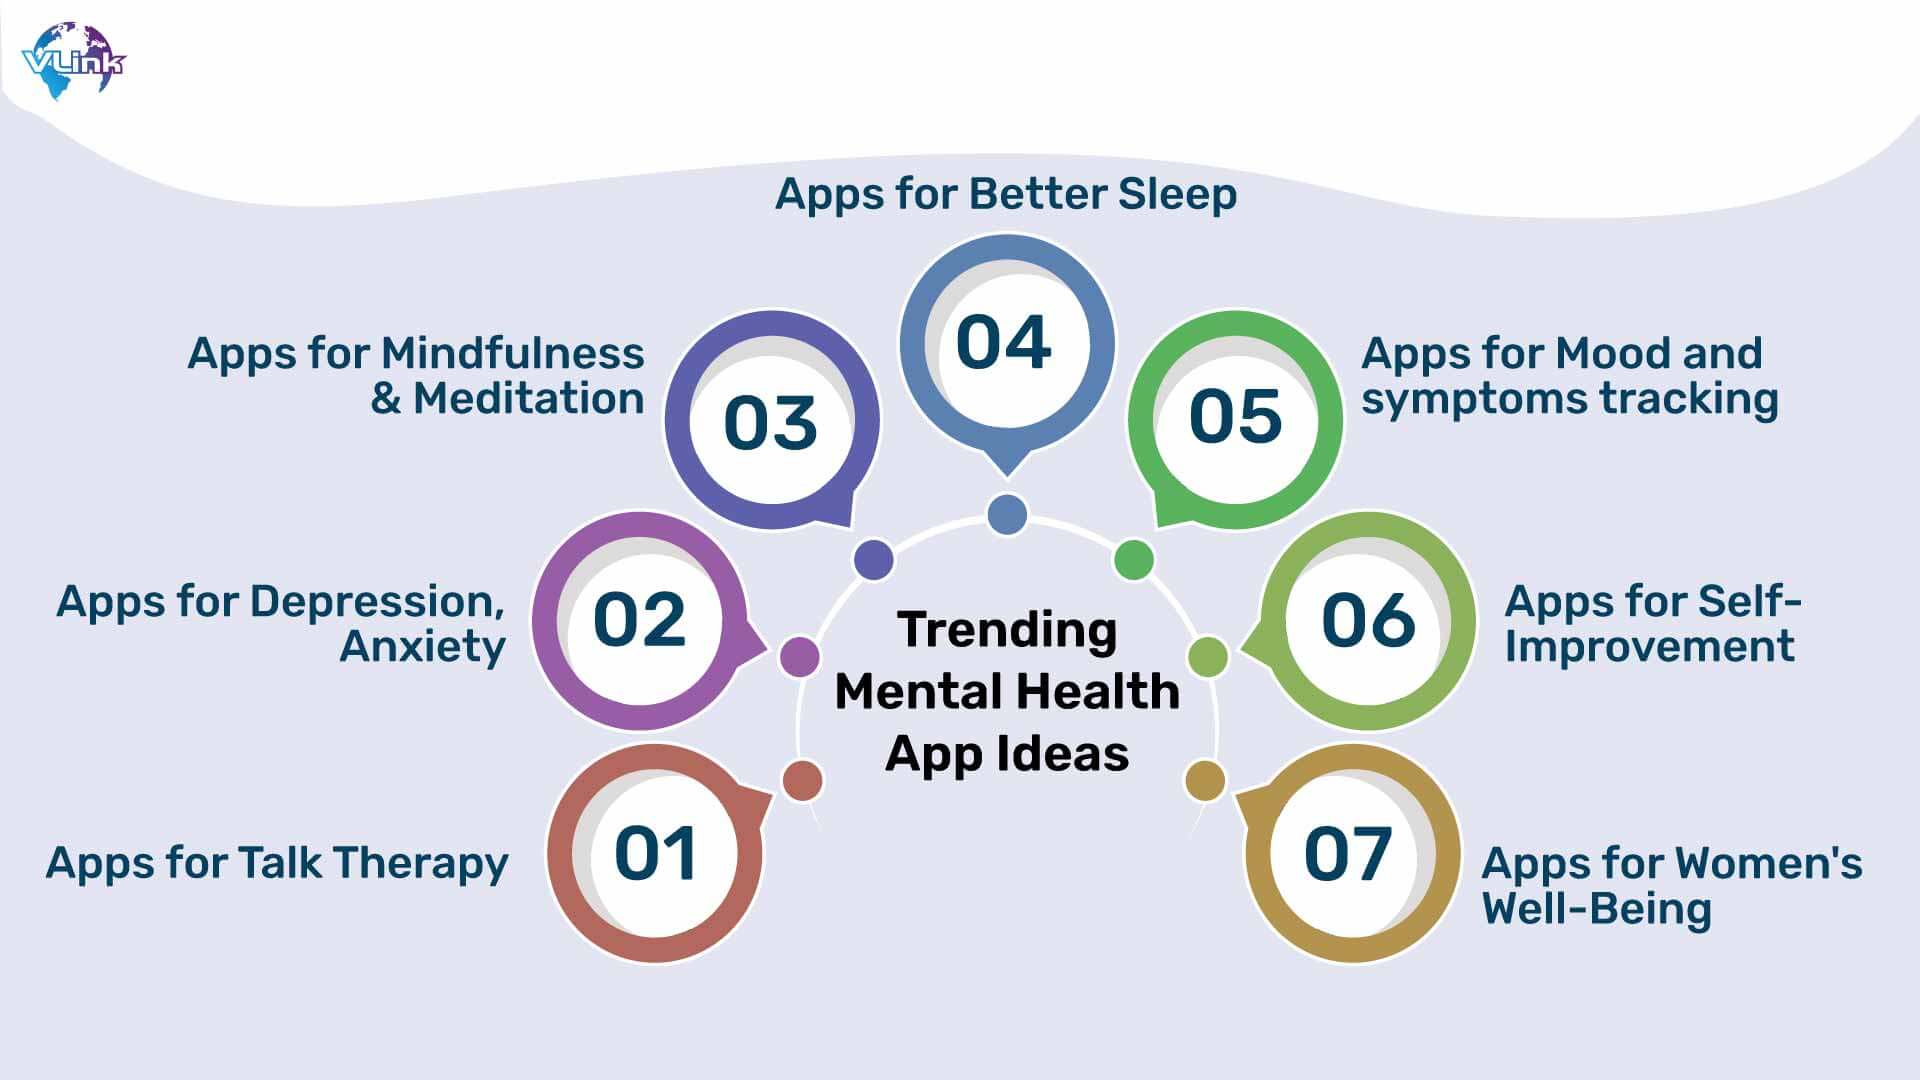 Apps for Better Sleep